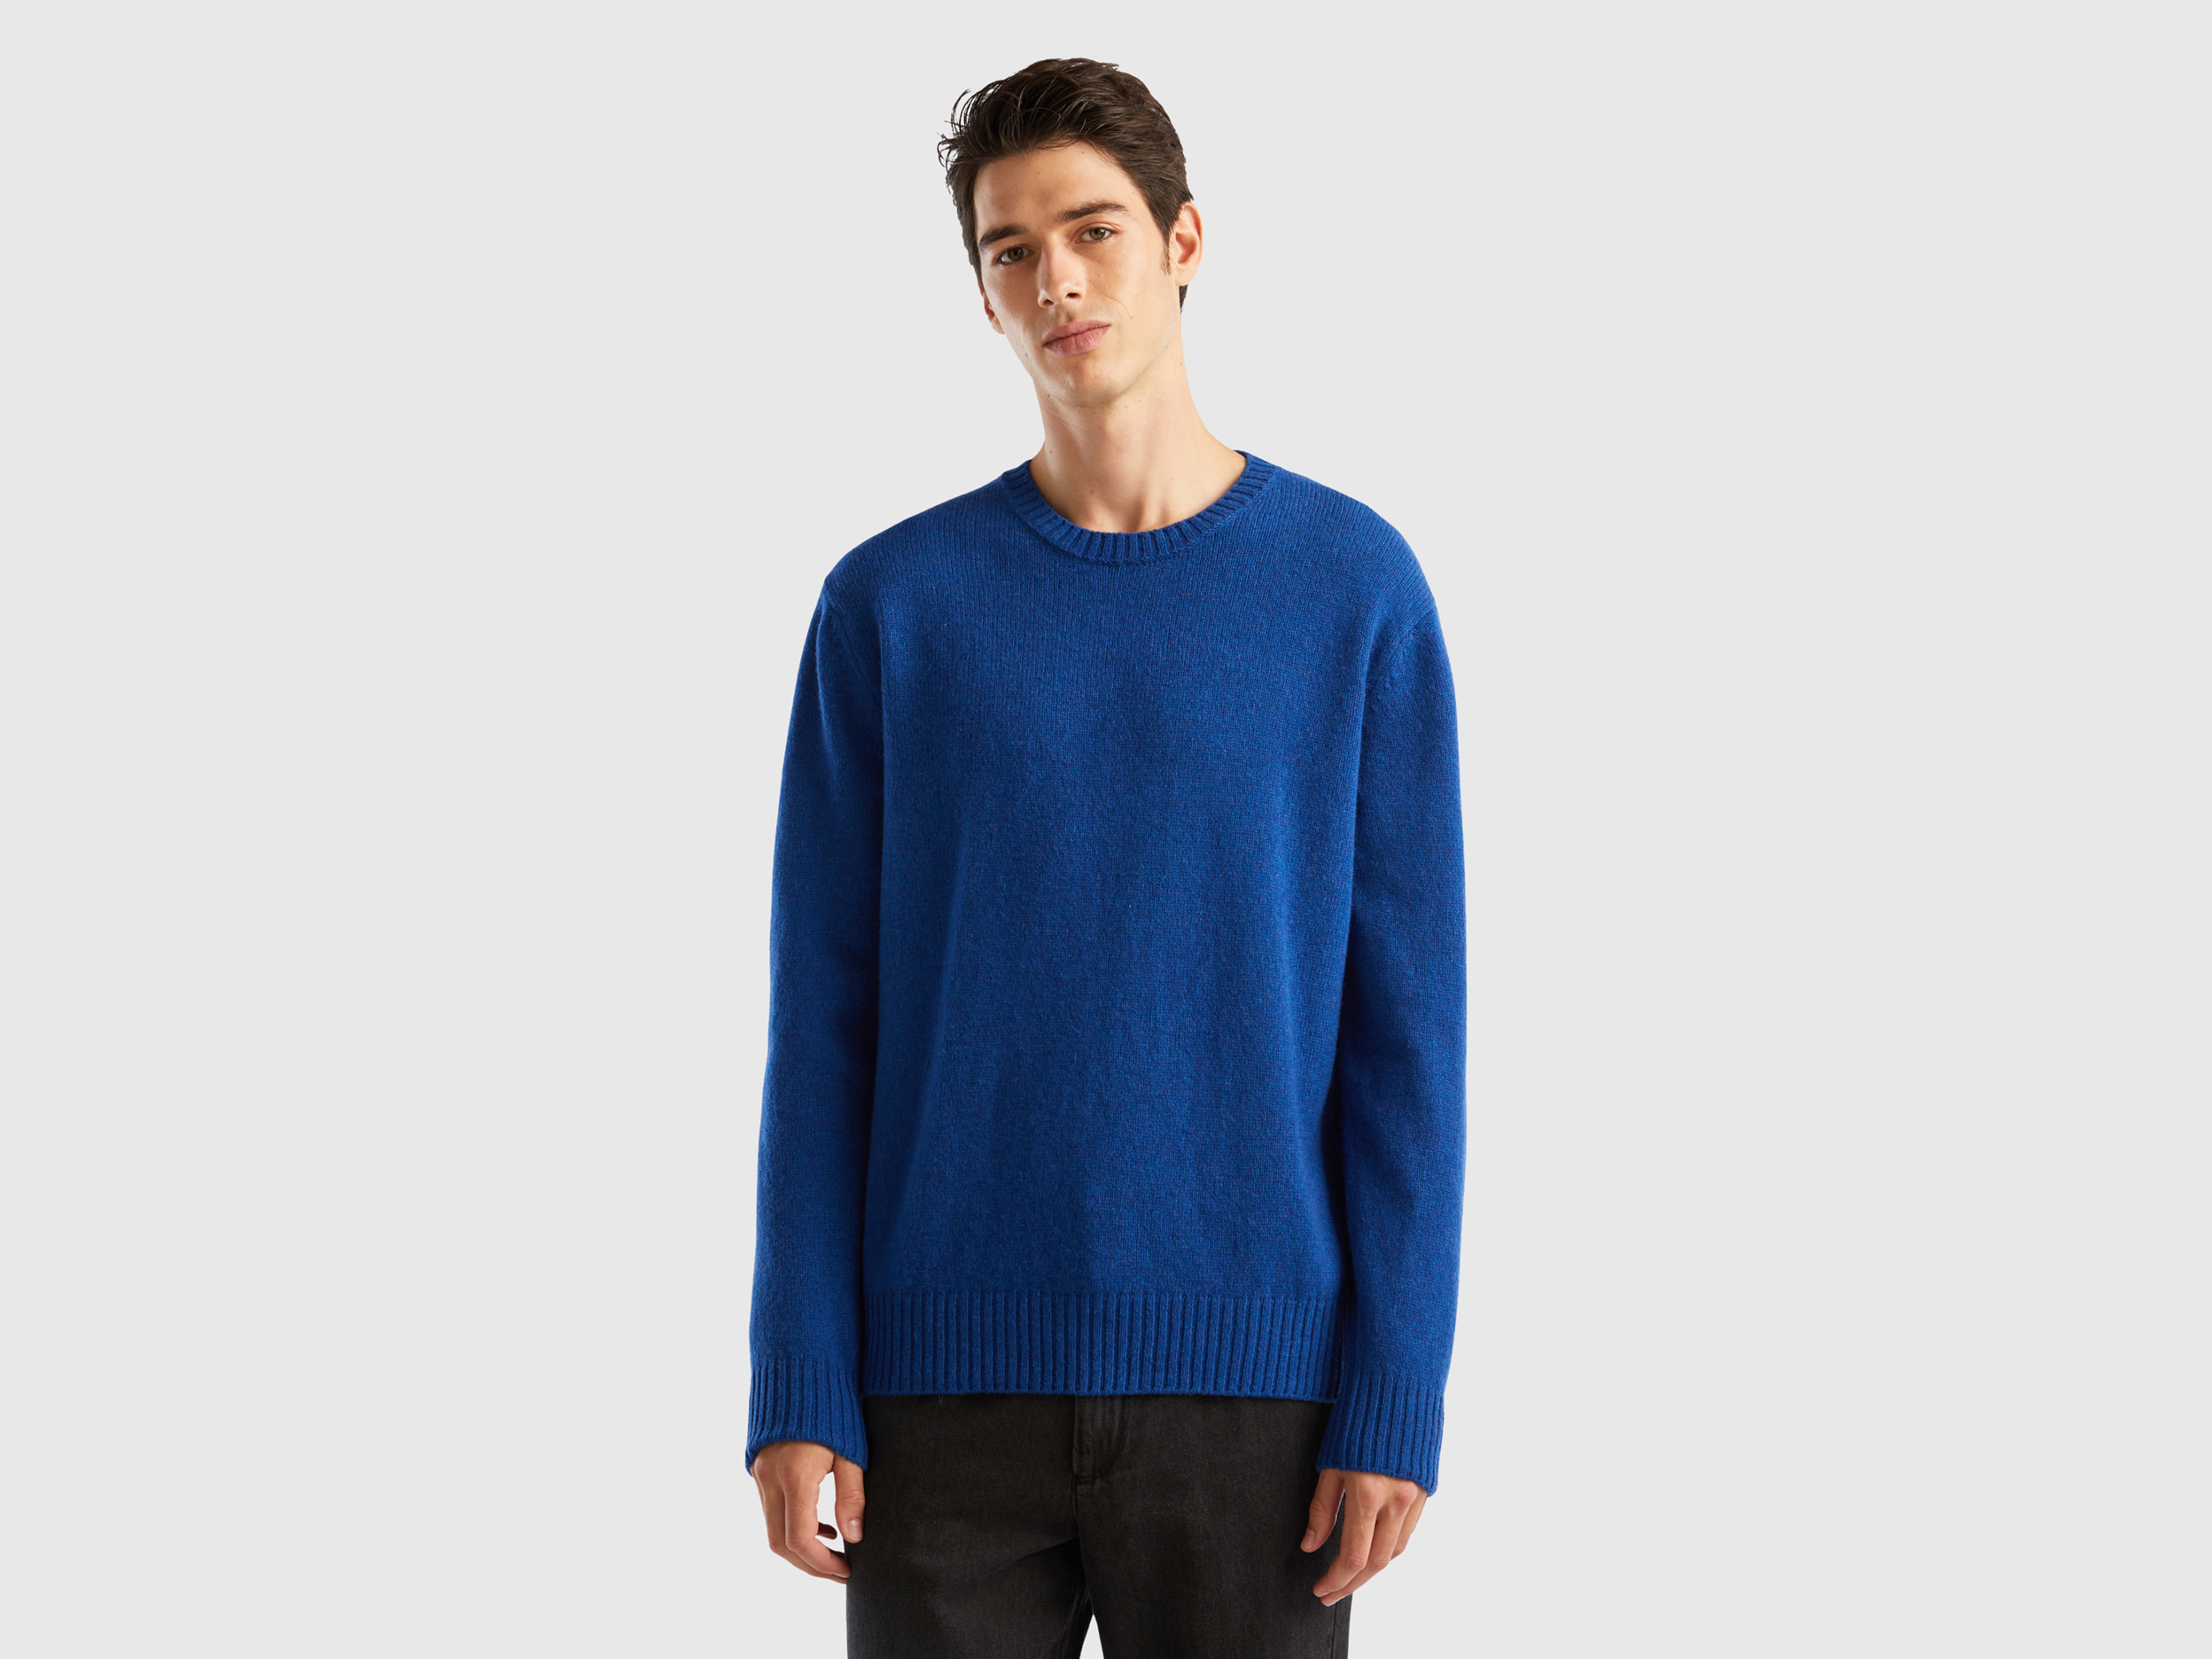 Benetton, Sweater In Shetland Wool, size M, Bright Blue, Men